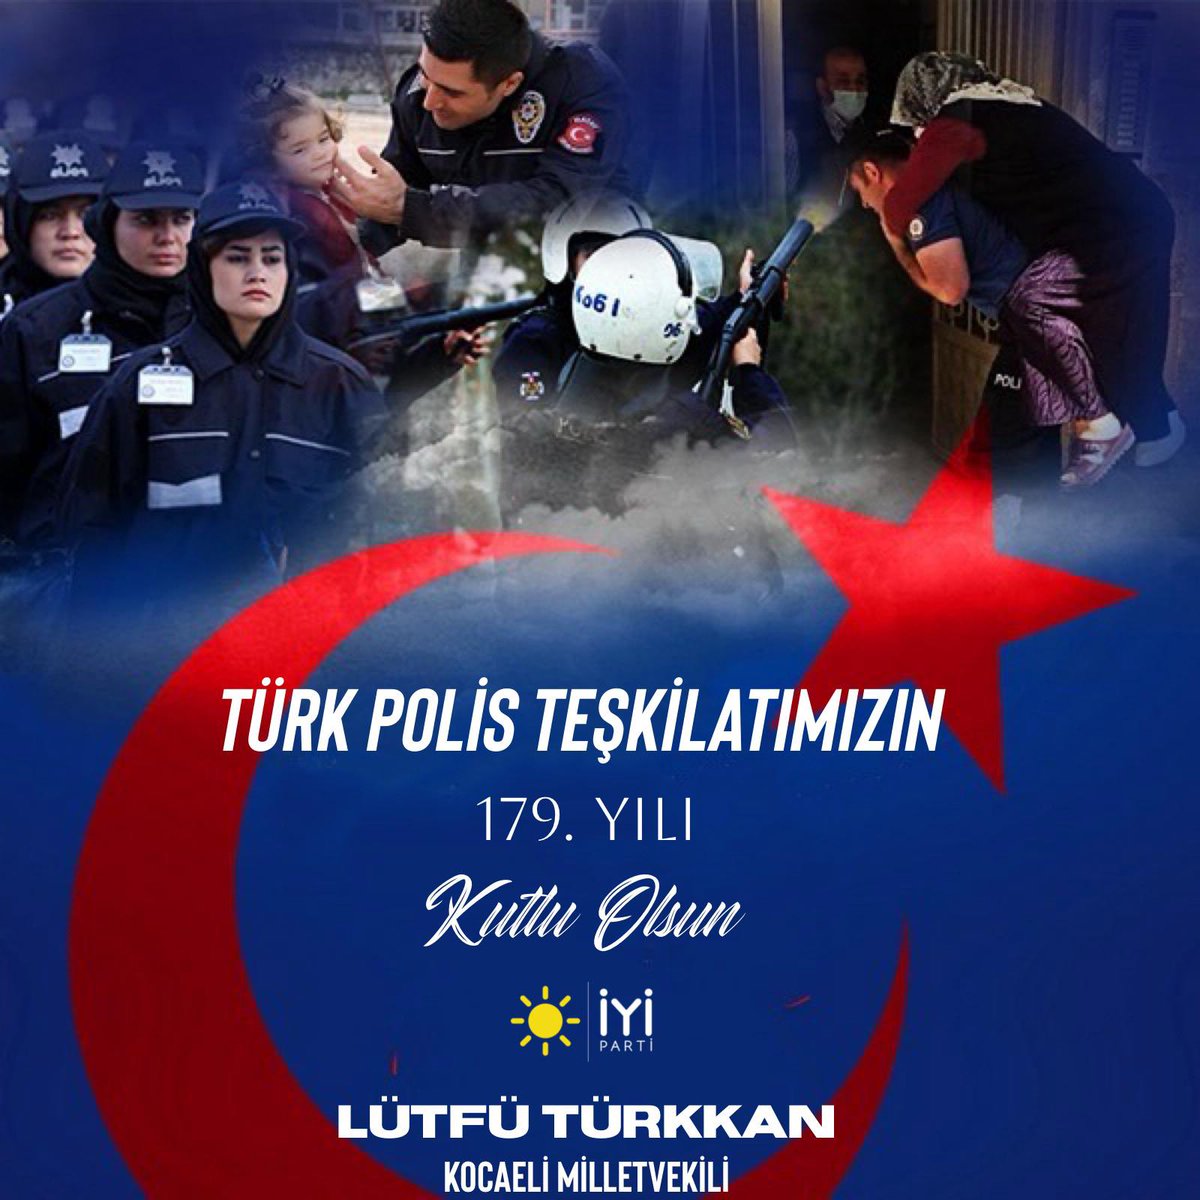 Her zaman, her yerde milletimizin huzuru ve güvenliği için canını hiçe sayan Kahraman Türk Polis Teşkilatımızın 179. yılı kutlu olsun..🇹🇷 #TürkPolisTeskilatı179Yaşında